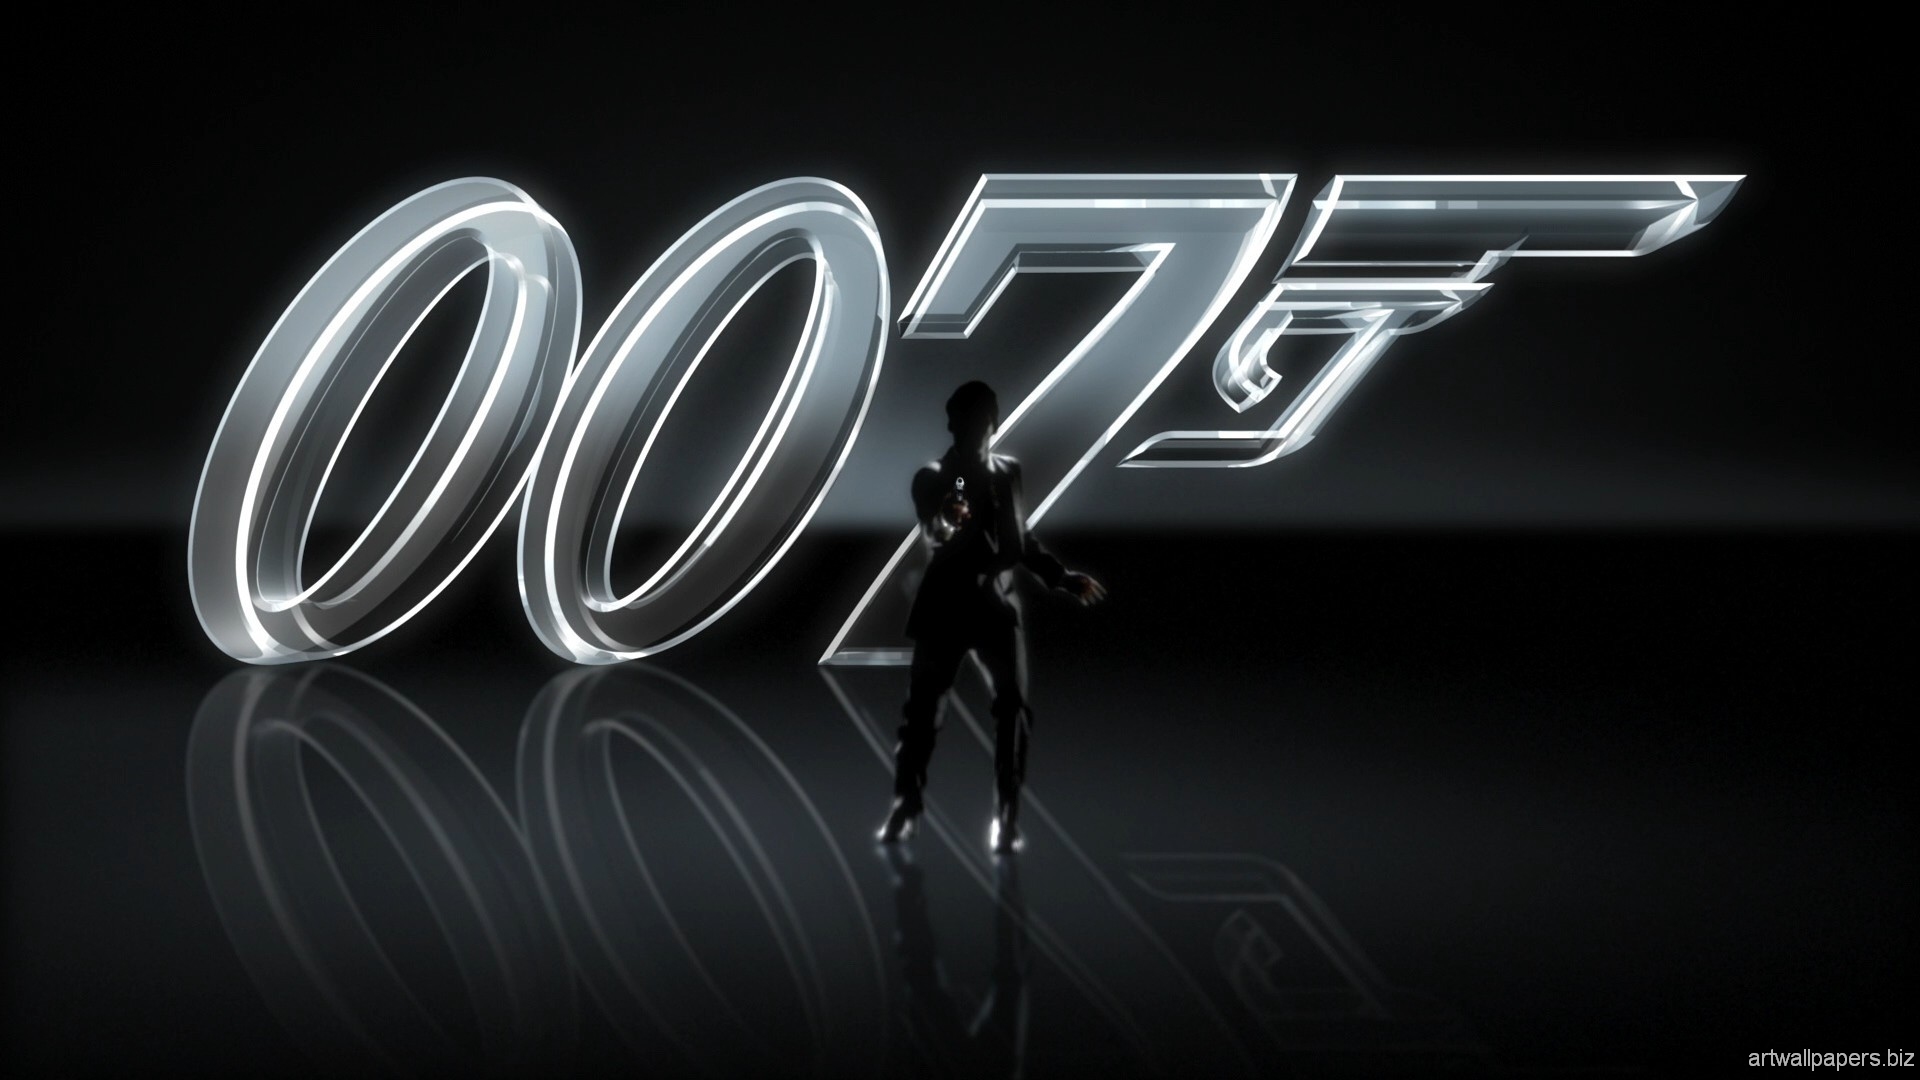 james bond 007 wallpaper,text,schriftart,grafikdesign,grafik,dunkelheit